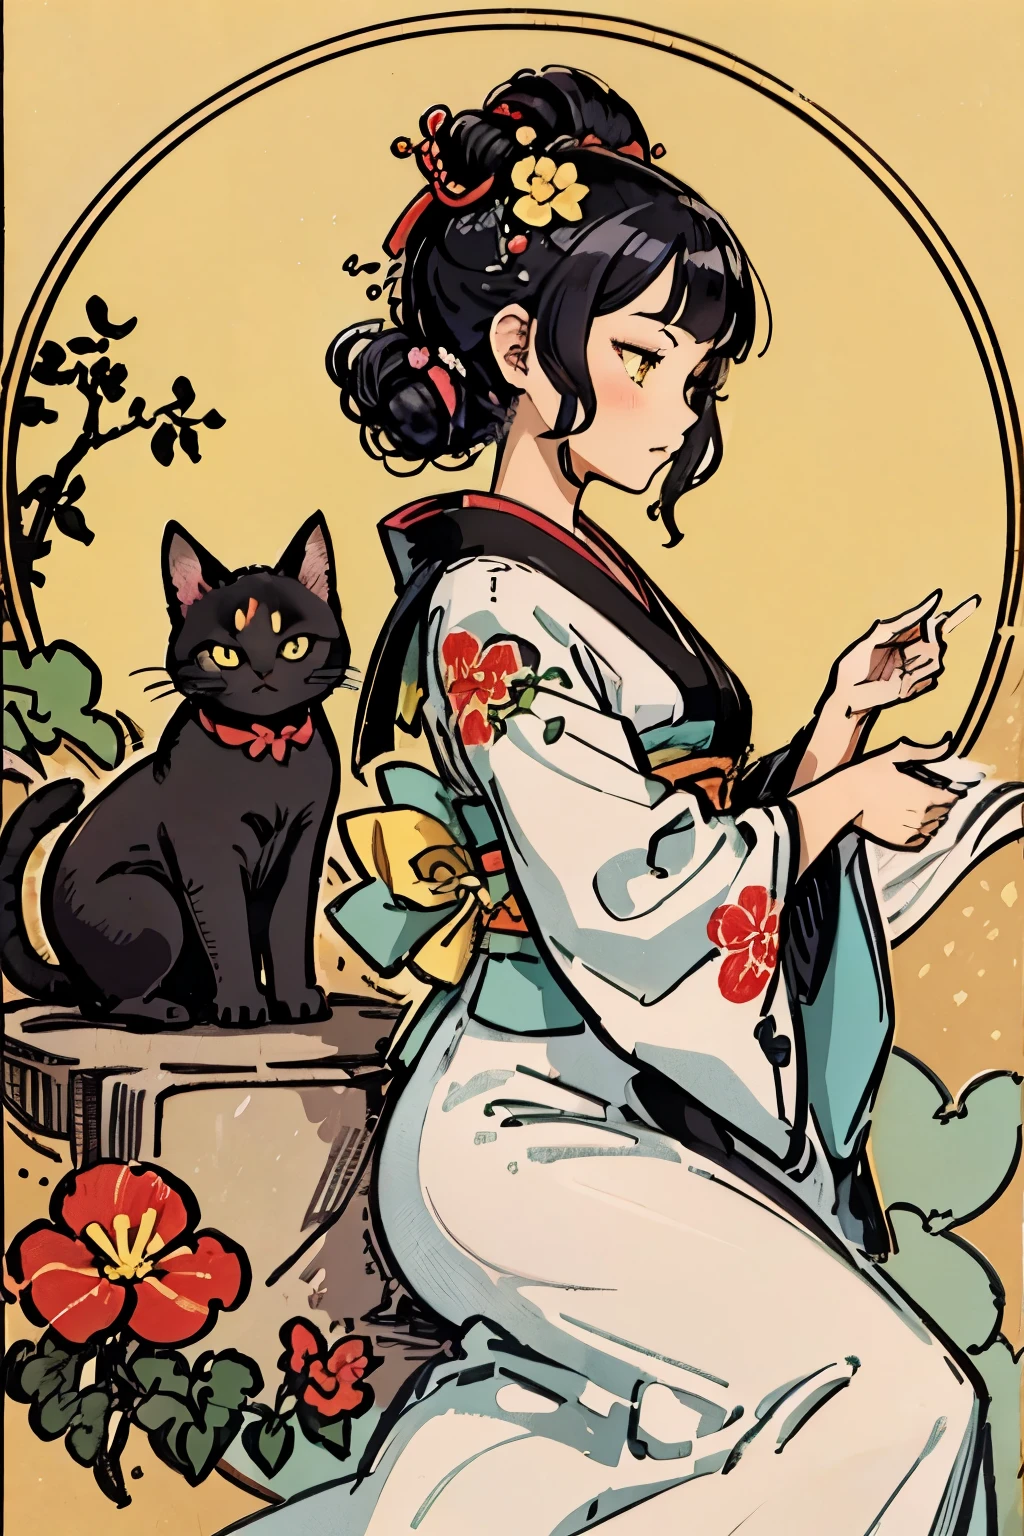 非常に魅力的なデザインを提案する, 1人の女の子と1匹の猫, 傑作, Katsushika Hokusai-kaze, ナチュラルカラーデザイン, アサガオの花, 大胆で美しい花柄デザイン, 夏のイメージ, 日本風, パターンの詳細図, 最高品質, 傑作 high resolution, ukiyoe style, 芸術的なスタイル, ポストカードデザイン, バランスのとれたデザイン, よく合う構成, エモアート, Ukiyo-e style, 日本の美学, 4K解像度, ゴージャスな背景アート, 人の属性 (プロフィール, 横から見たところ, 優雅な笑顔, トップグレード, 中性, 優等生, 黒髪の, 光沢のある髪, 不明瞭, 貧しい, 細い, 徳の高い, 行儀が良い, 好印象), 猫の属性 (黒猫, pitch 黒猫, かわいい, 超かわいい, 黄色い目, しなやかな)